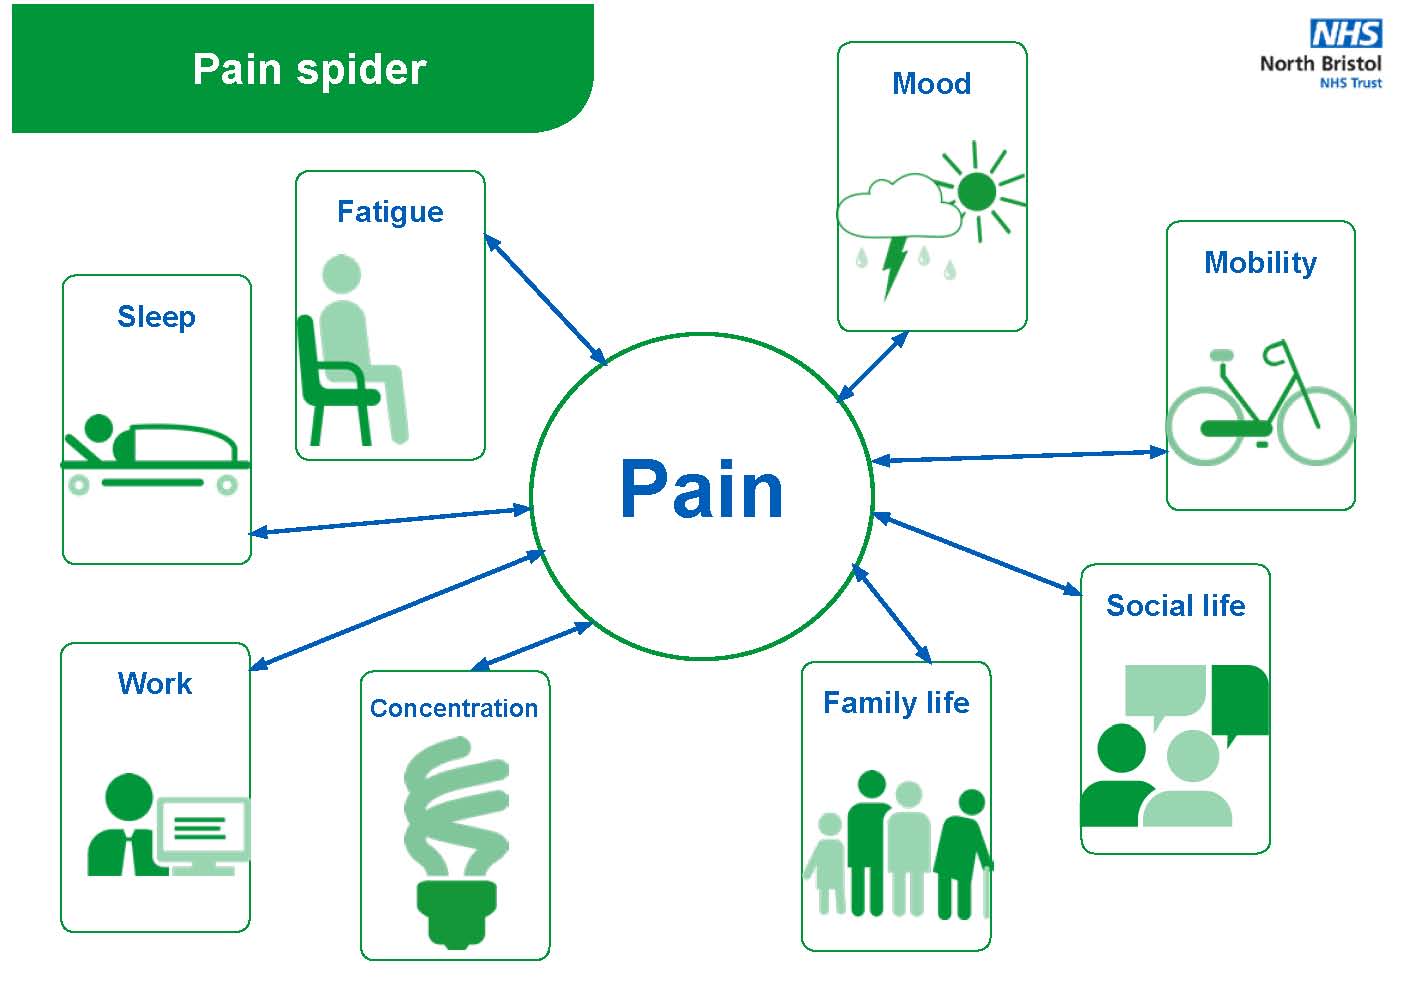 Pain spider